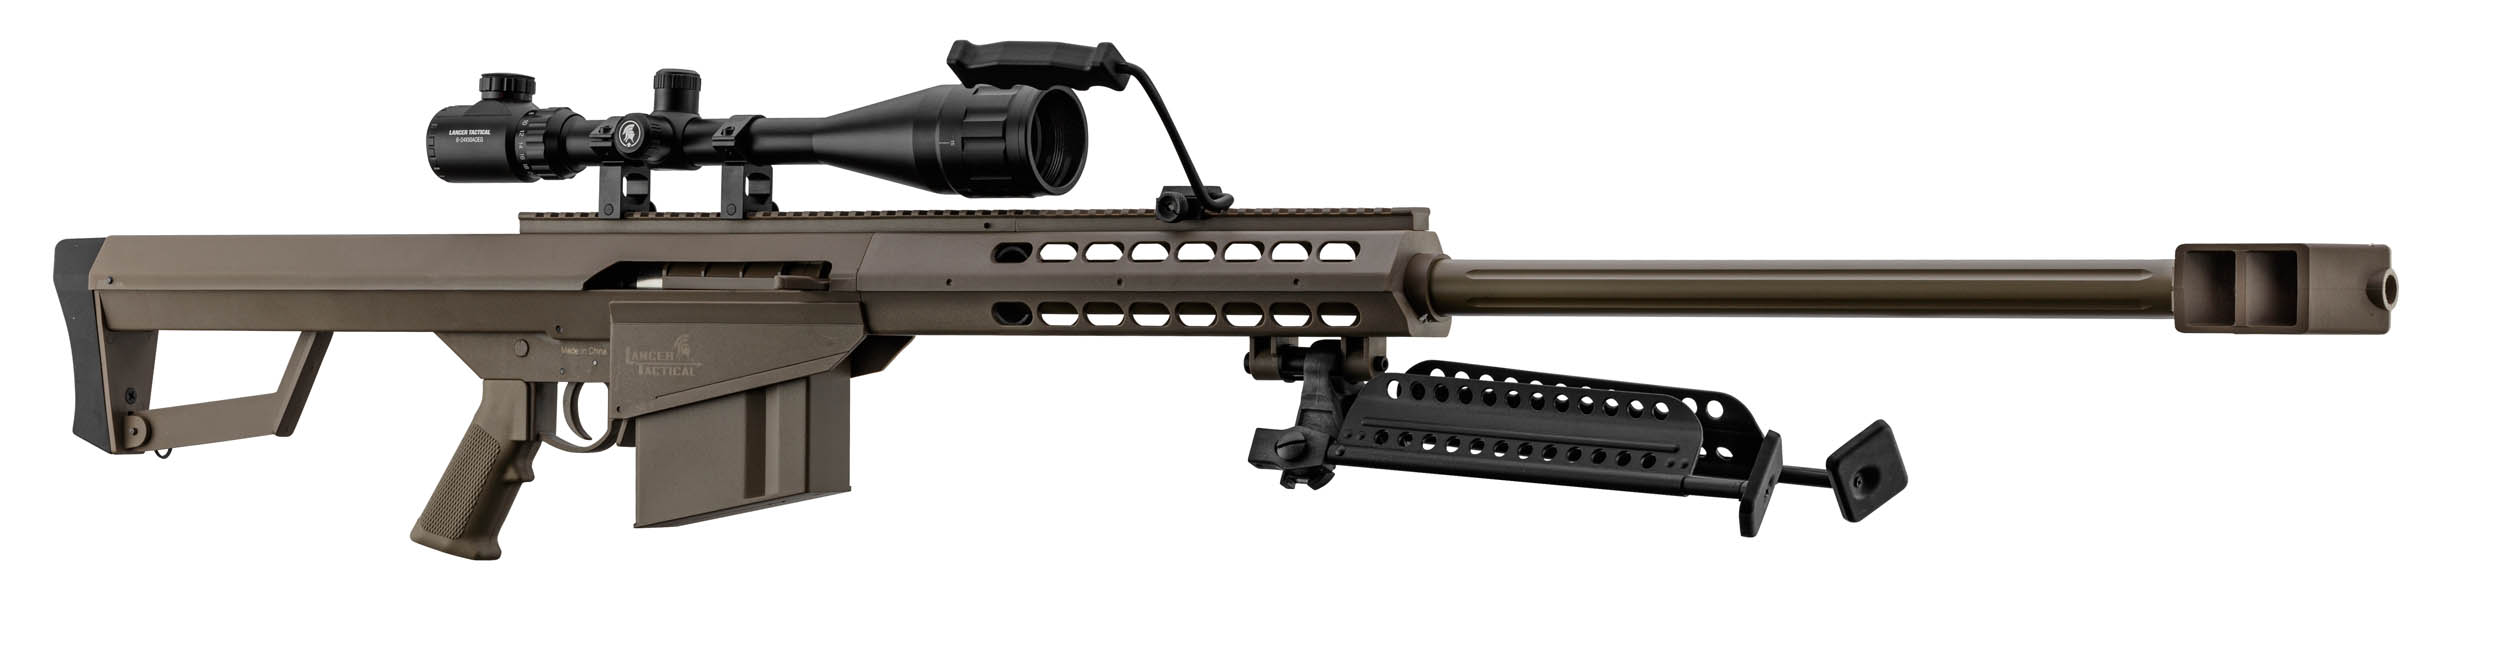 PCKLR3052-04 Pack Sniper LT-20 tan M82 1,5J + lunette + bi-pied + poignée - PCKLR3052